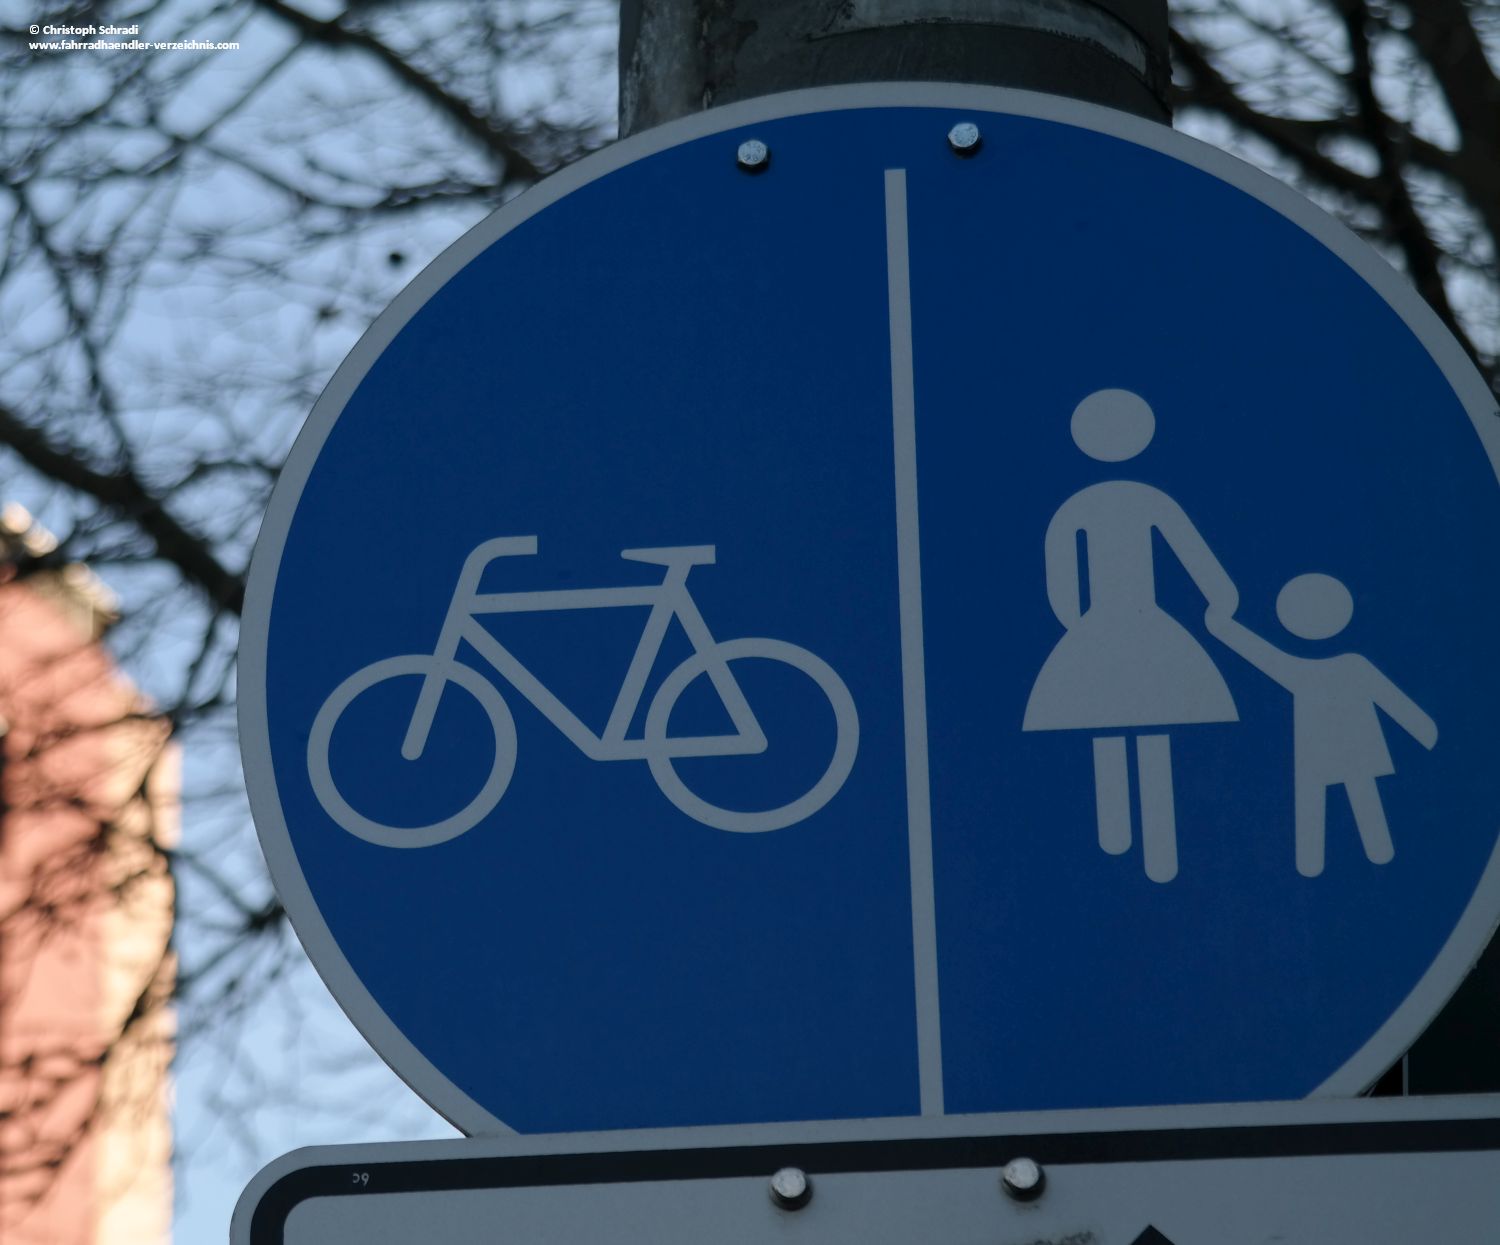 Ein getrennter Fahrrad- und Fußweg wird durch einen senkrecht statt waagrecht stehenden Strich auf dem blau hinterlegten Verkehrszeichen angezeigt